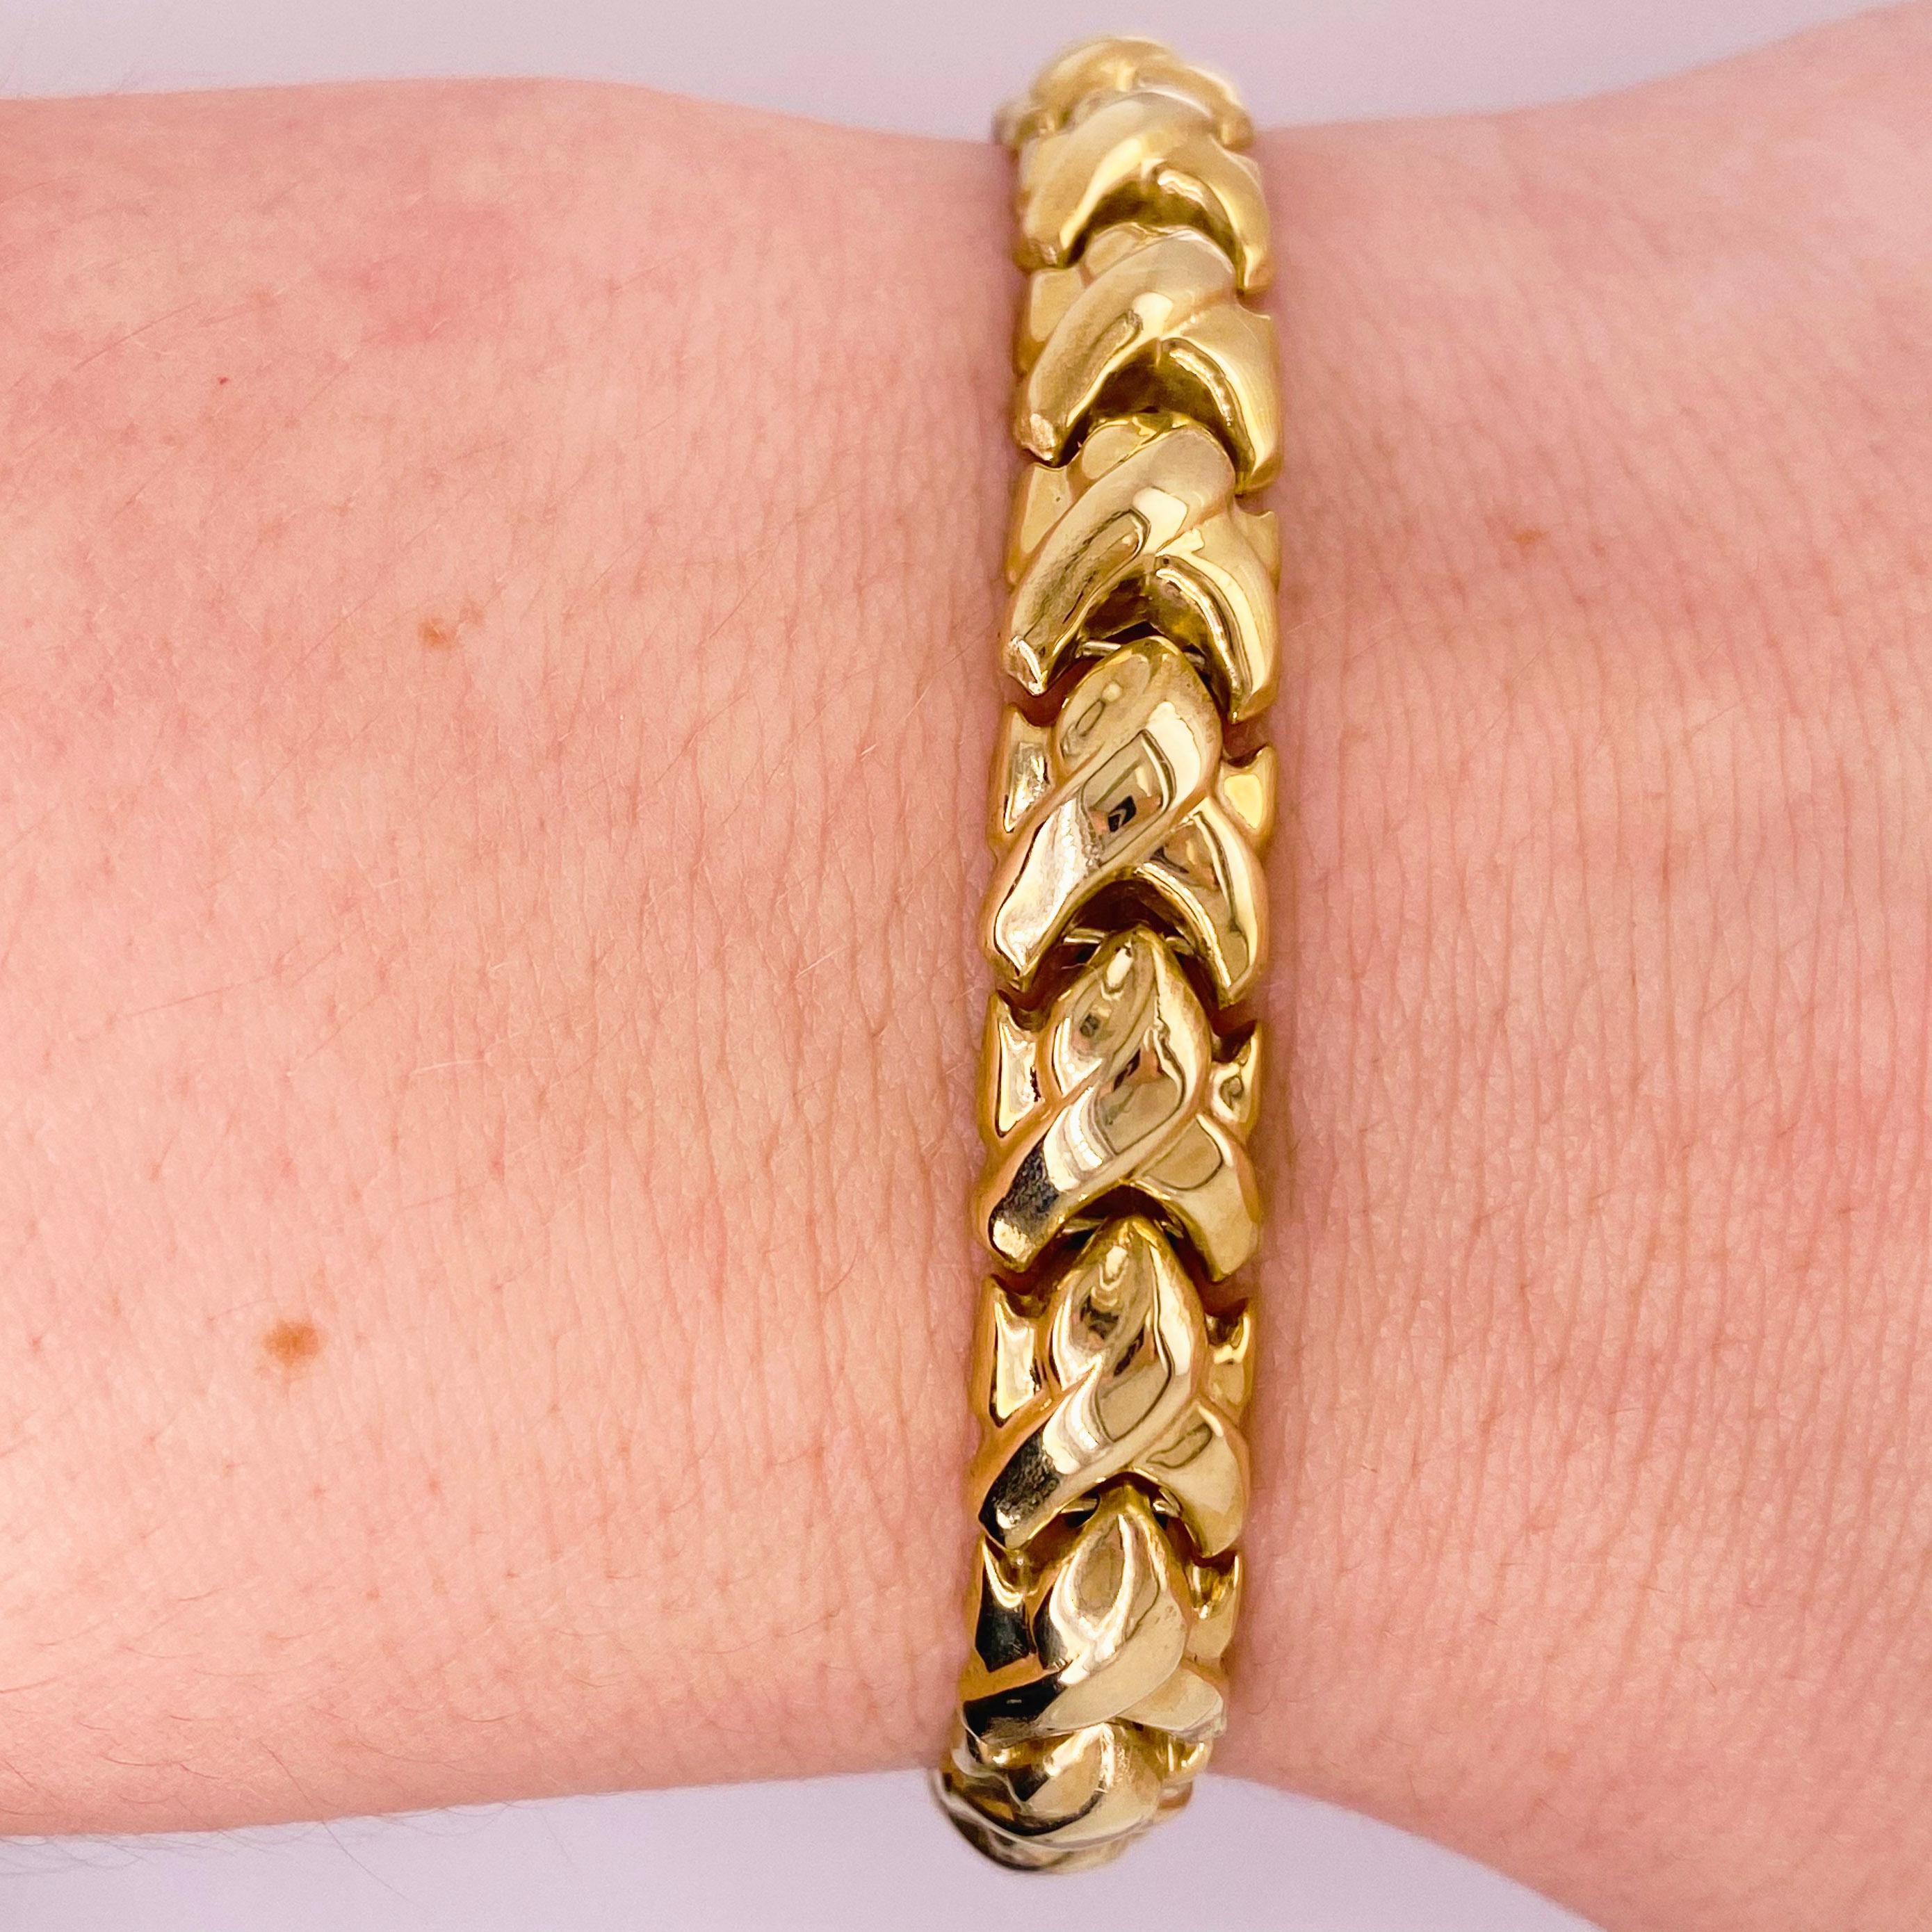 Il s'agit d'un bracelet à maillons fantaisie en or jaune 10 carats fait à la main ! Chaque maillon a été fait à la main et assemblé pour créer ce magnifique motif. Ce bracelet serait un excellent cadeau pour l'être aimé ou pour vous-même !
Vous